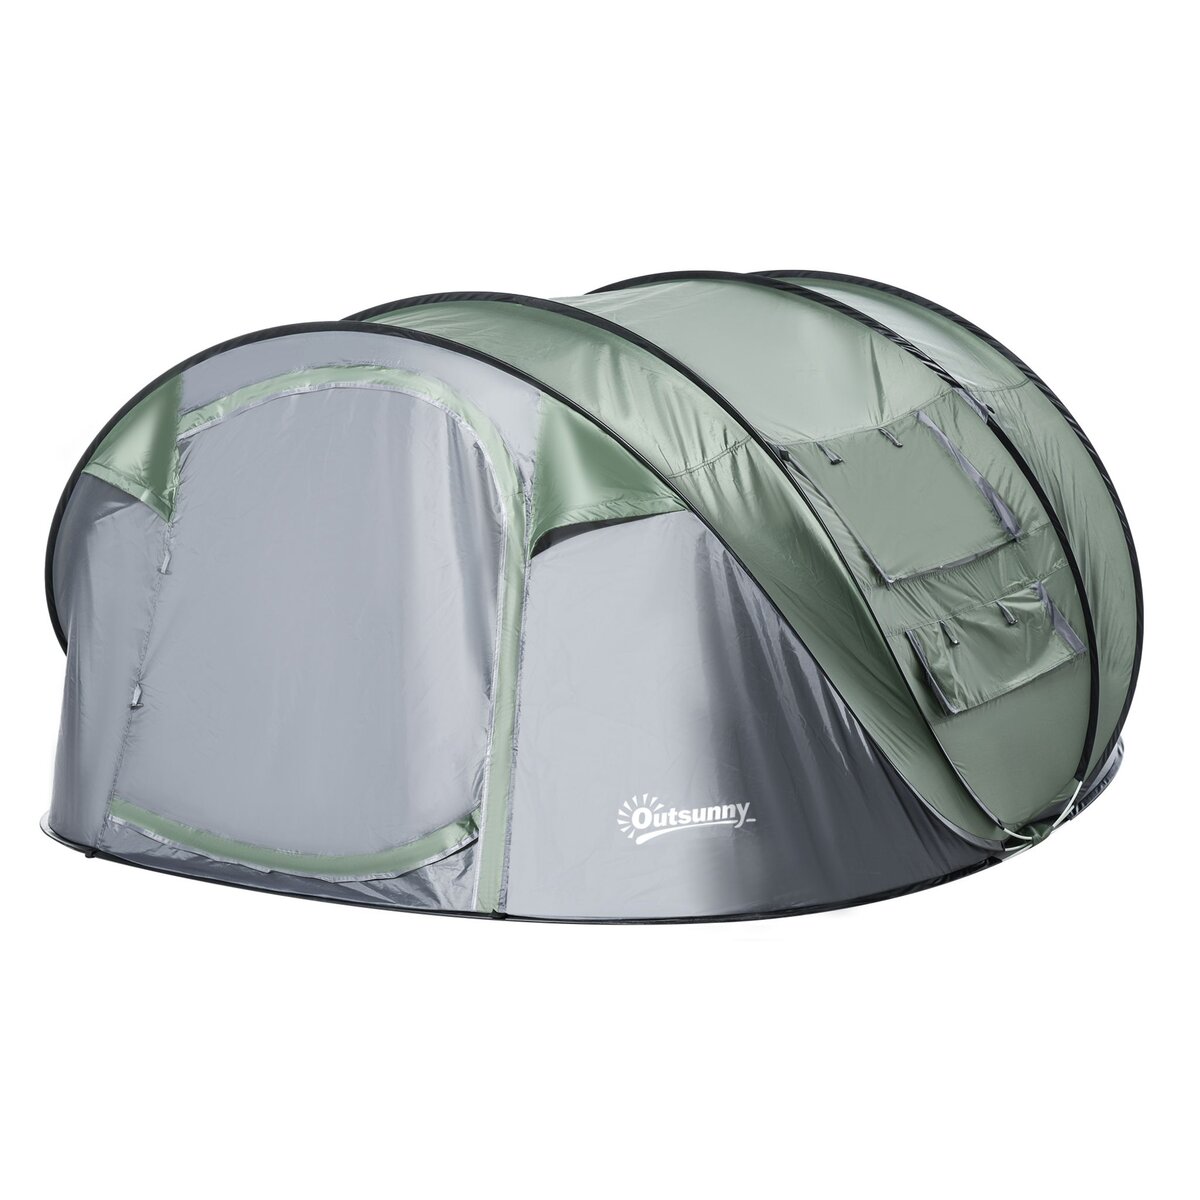 OUTSUNNY Tente de camping 4-5 personnes montage instantanée pop-up 2 portes enroulables 4 fenêtres dim. 2,63L x 2,2l x 1,23H m fibre verre polyester PE vert gris